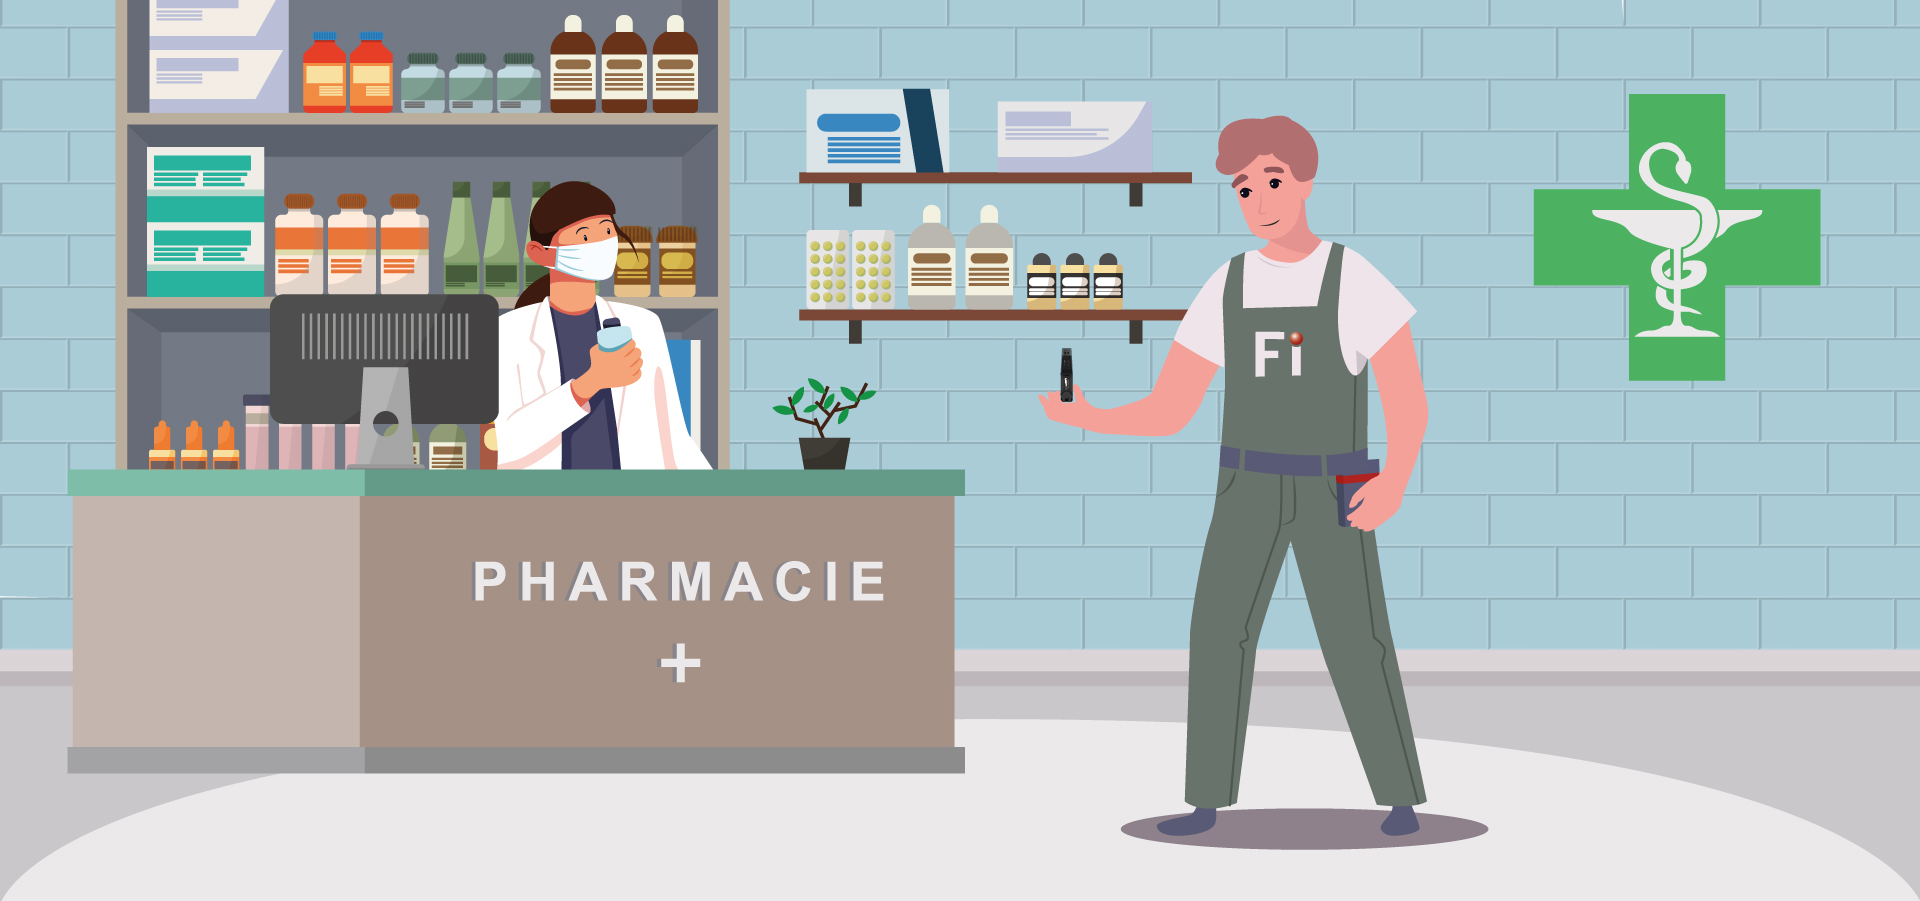 [FI] - Stockage dans les pharmacies et établissements